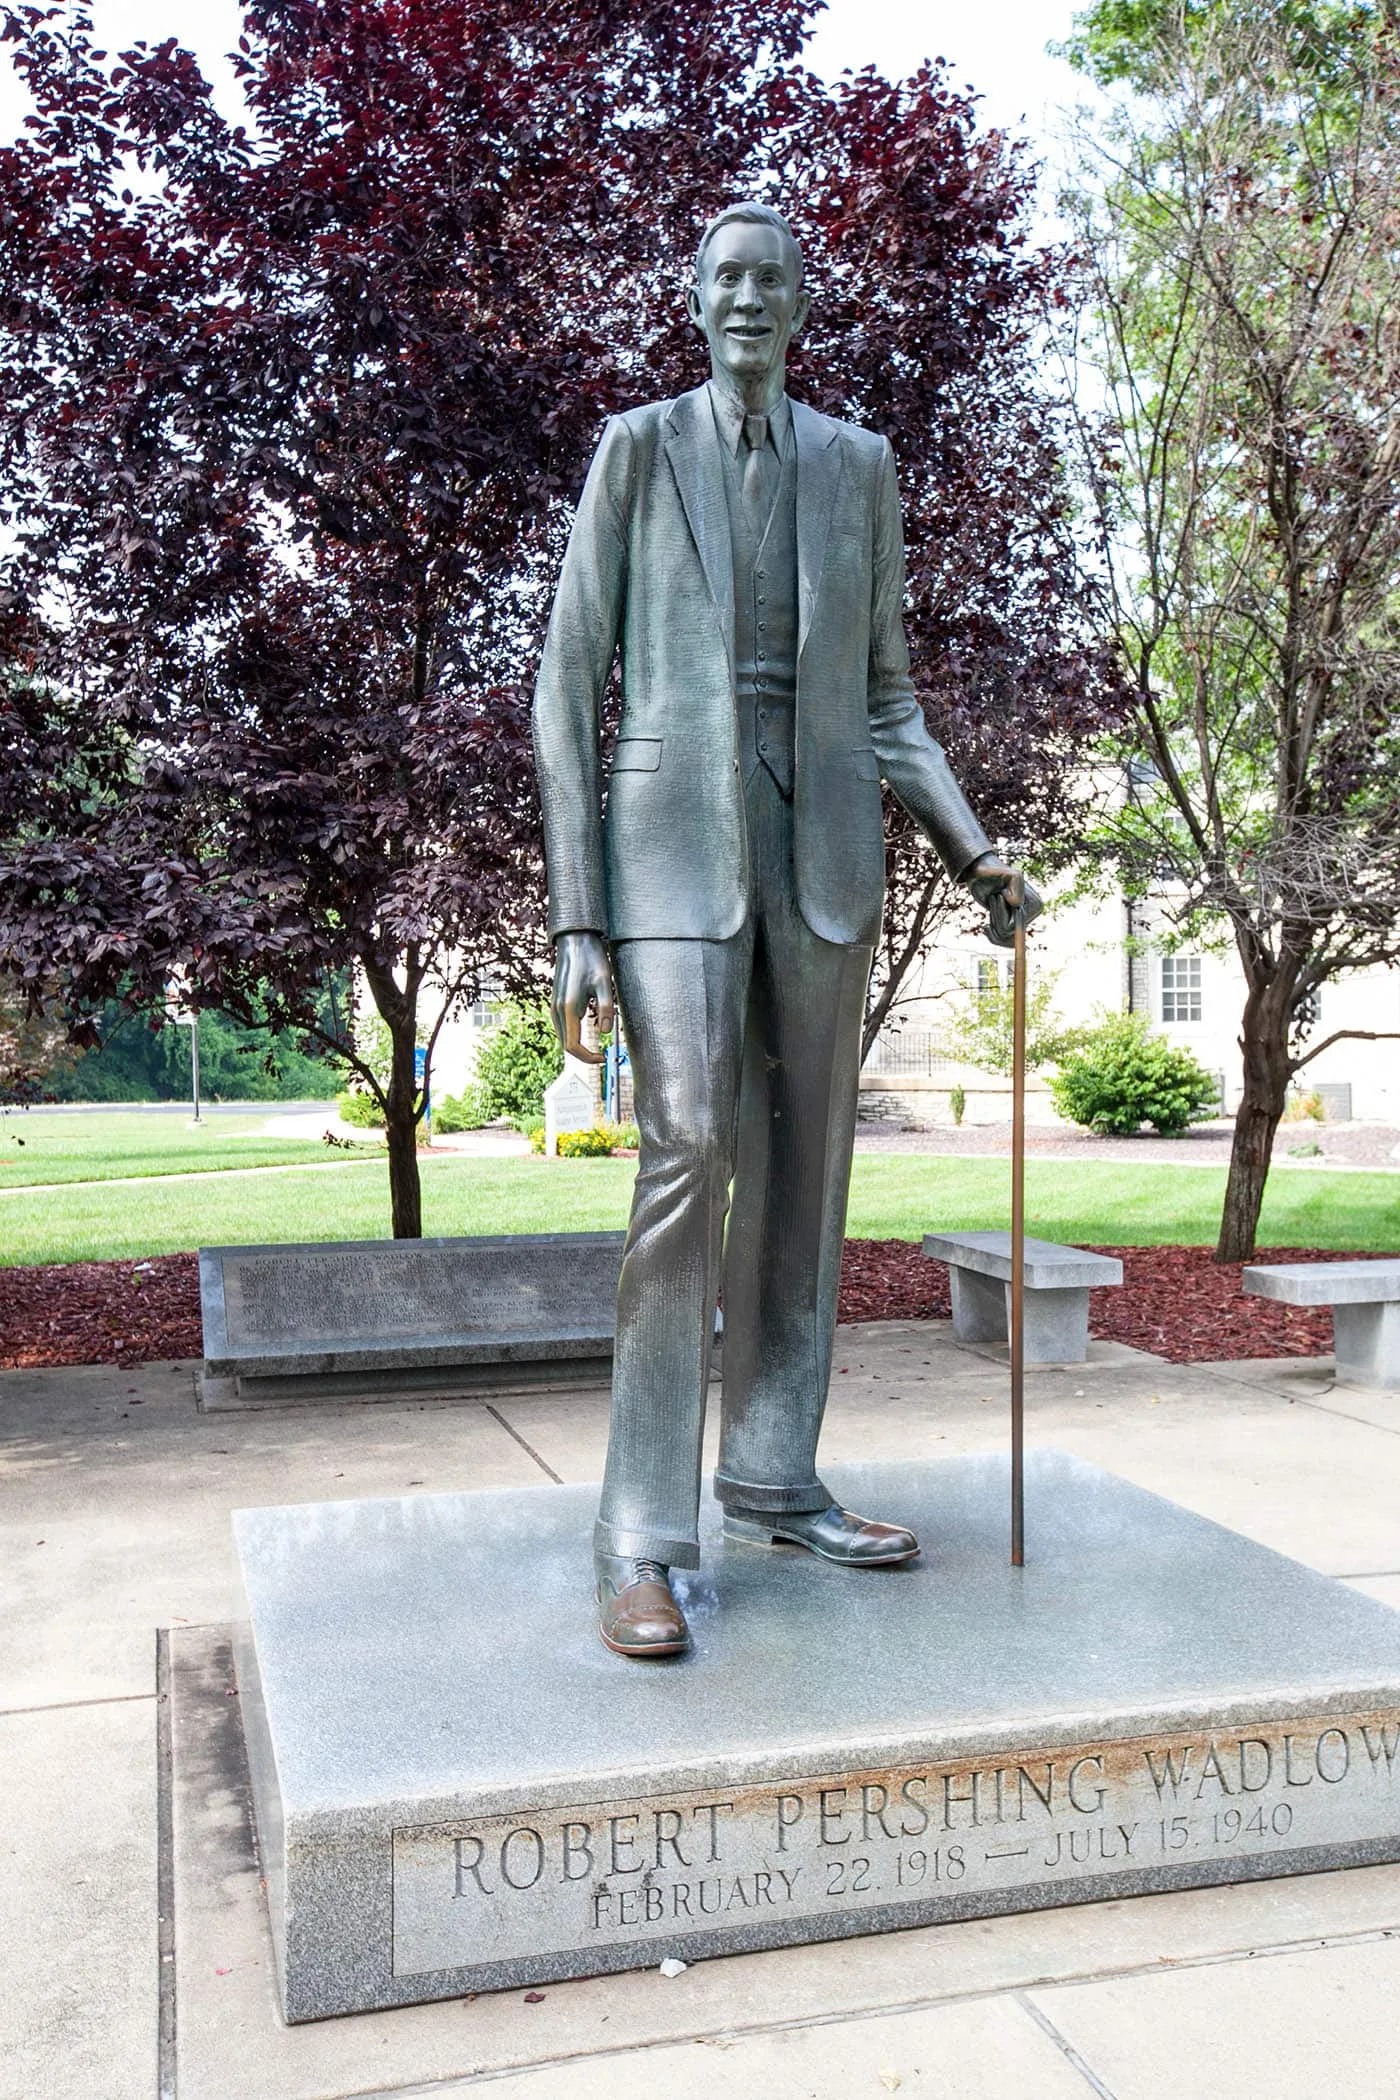 Robert Wadlow Statue in Alton, Illinois. The World's Tallest Man.